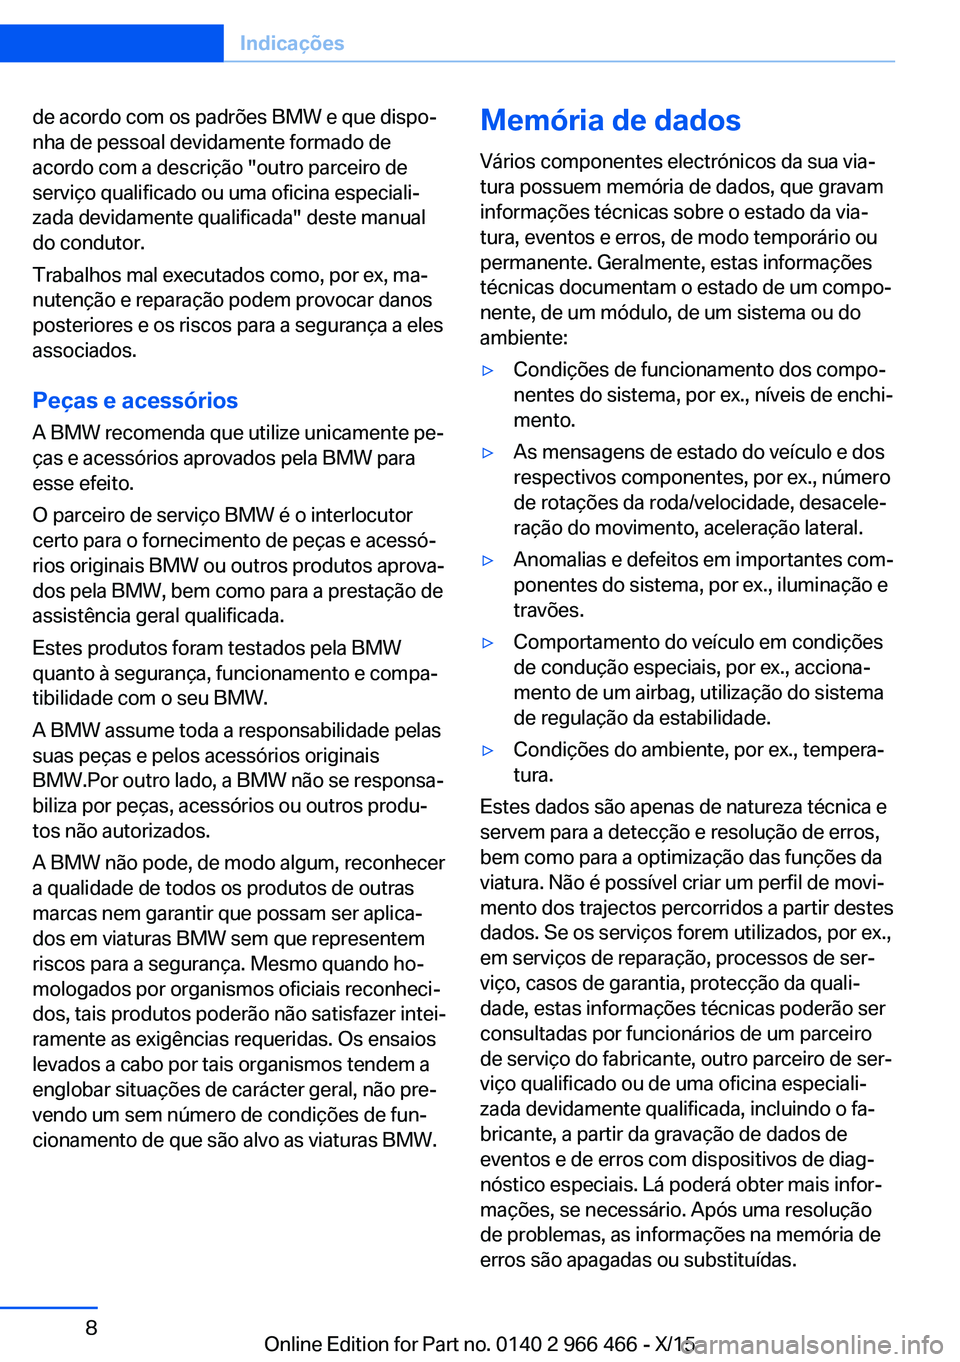 BMW 7 SERIES 2016  Manual do condutor (in Portuguese) de acordo com os padrões BMW e que dispo‐
nha de pessoal devidamente formado de
acordo com a descrição "outro parceiro de
serviço qualificado ou uma oficina especiali‐
zada devidamente qua